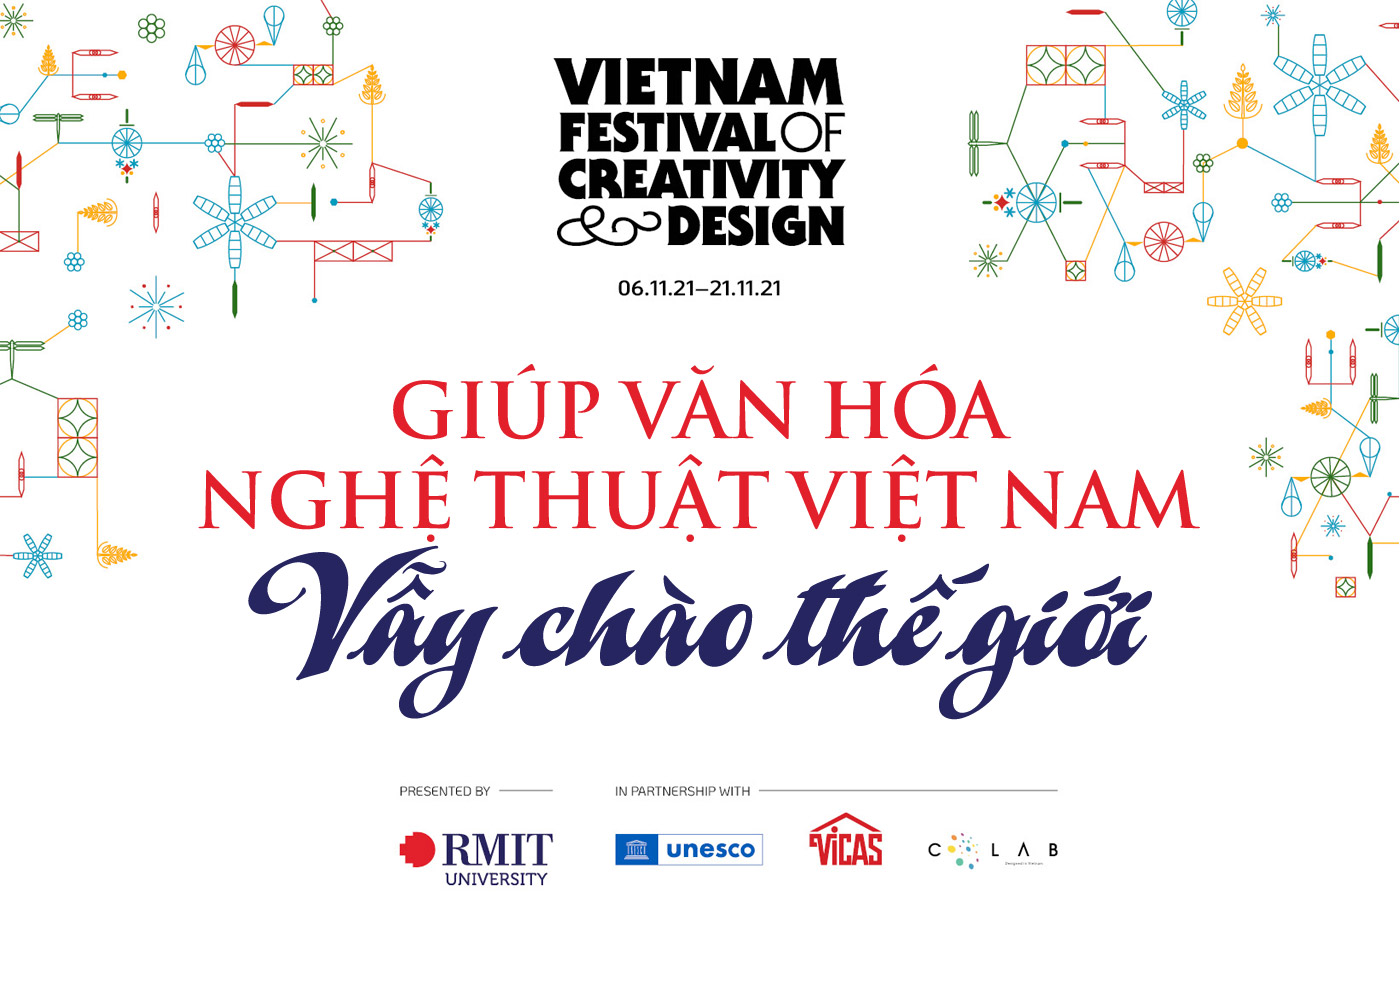 Giúp văn hóa nghệ thuật Việt Nam vẫy chào thế giới - Ảnh 1